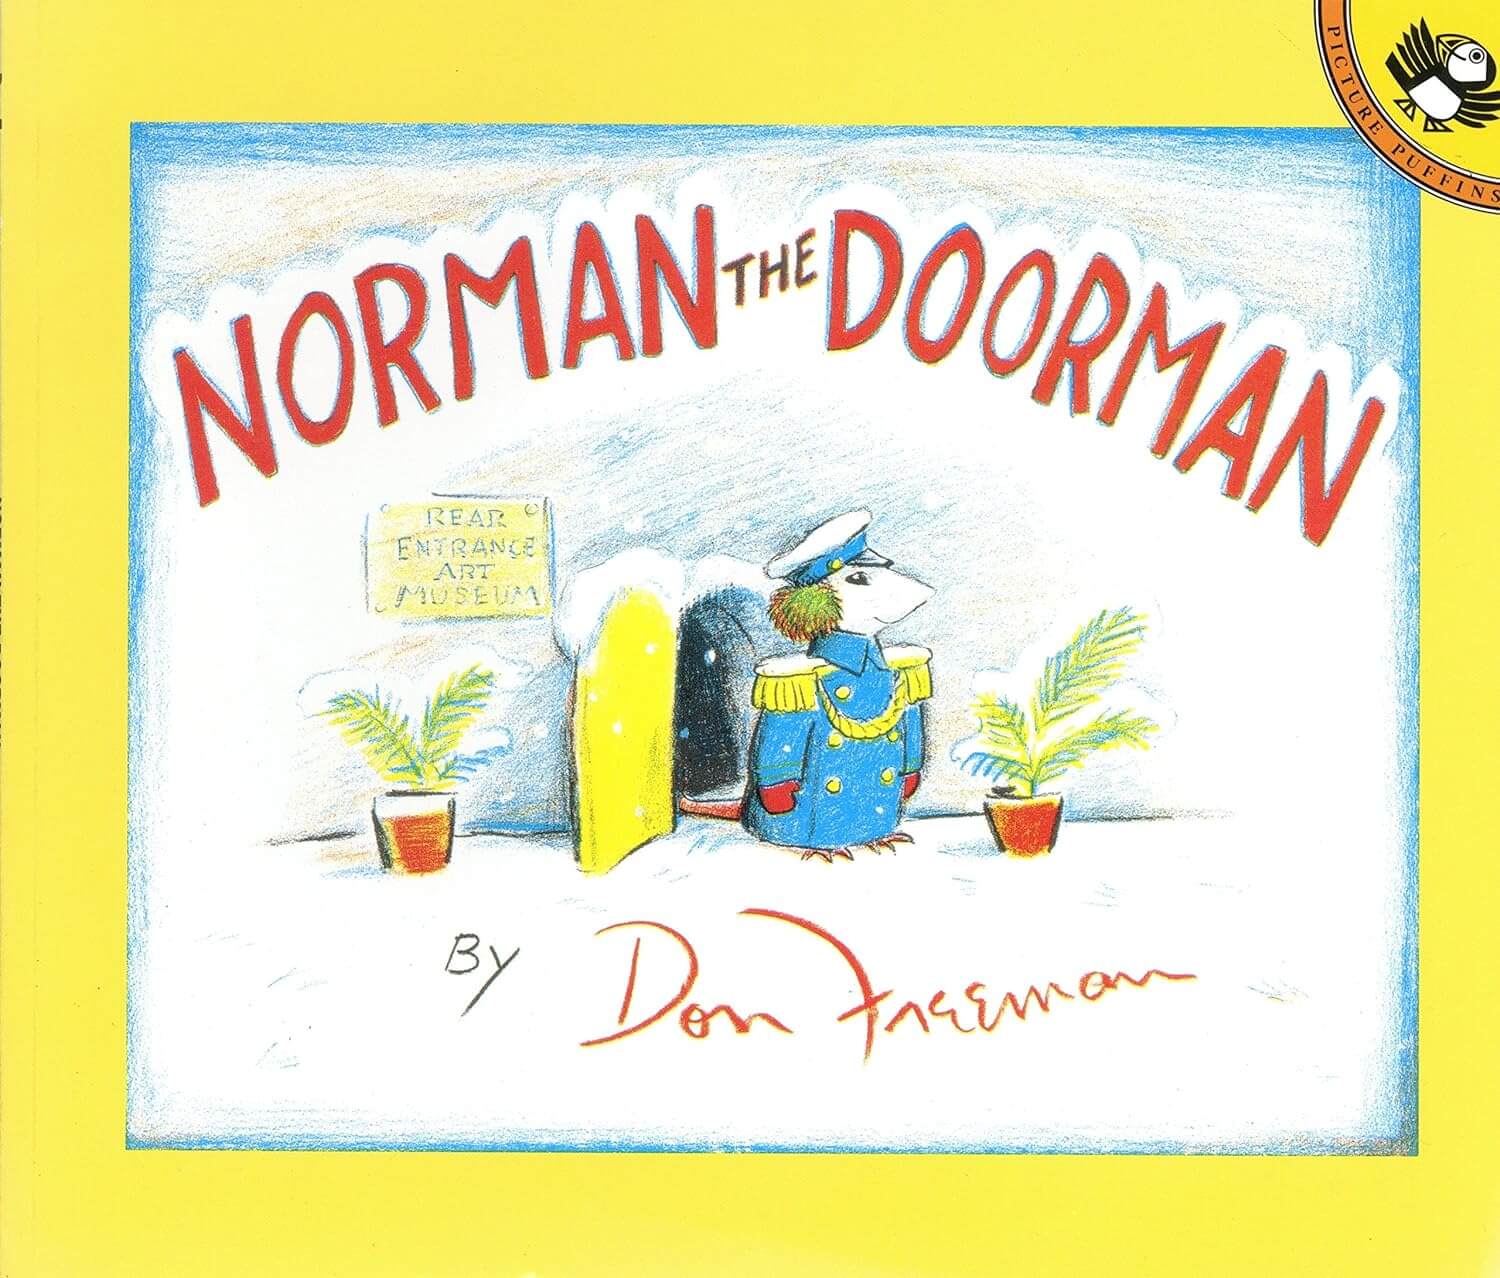 Book: Norman the Doorman